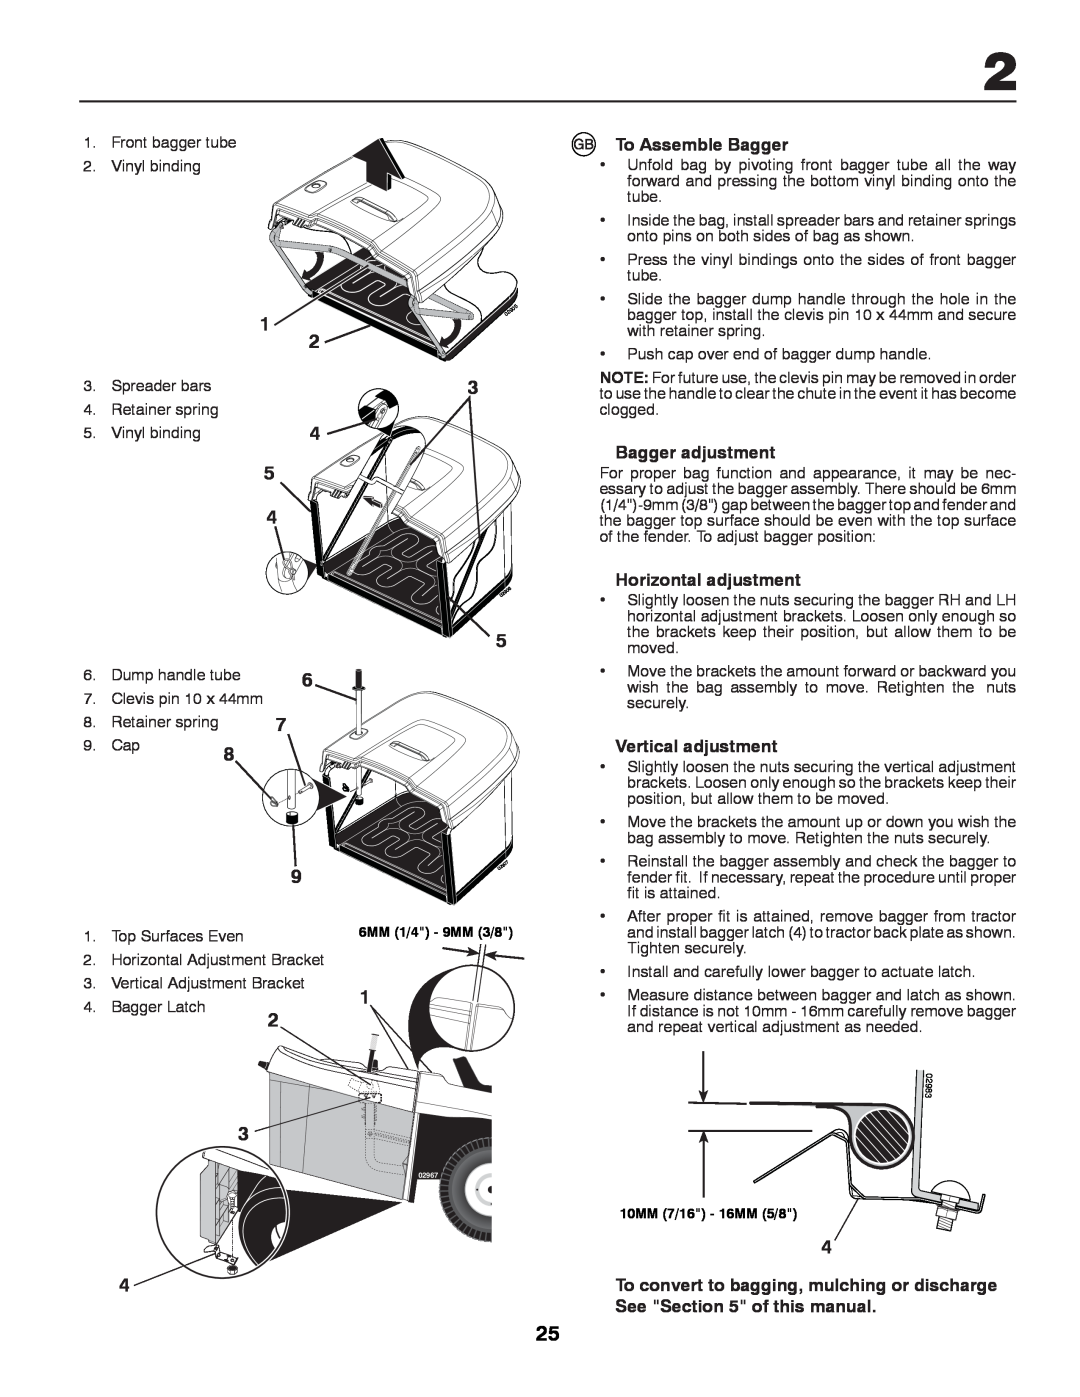 Partner Tech P12597RB instruction manual To Assemble Bagger, Bagger adjustment, Horizontal adjustment, Vertical adjustment 